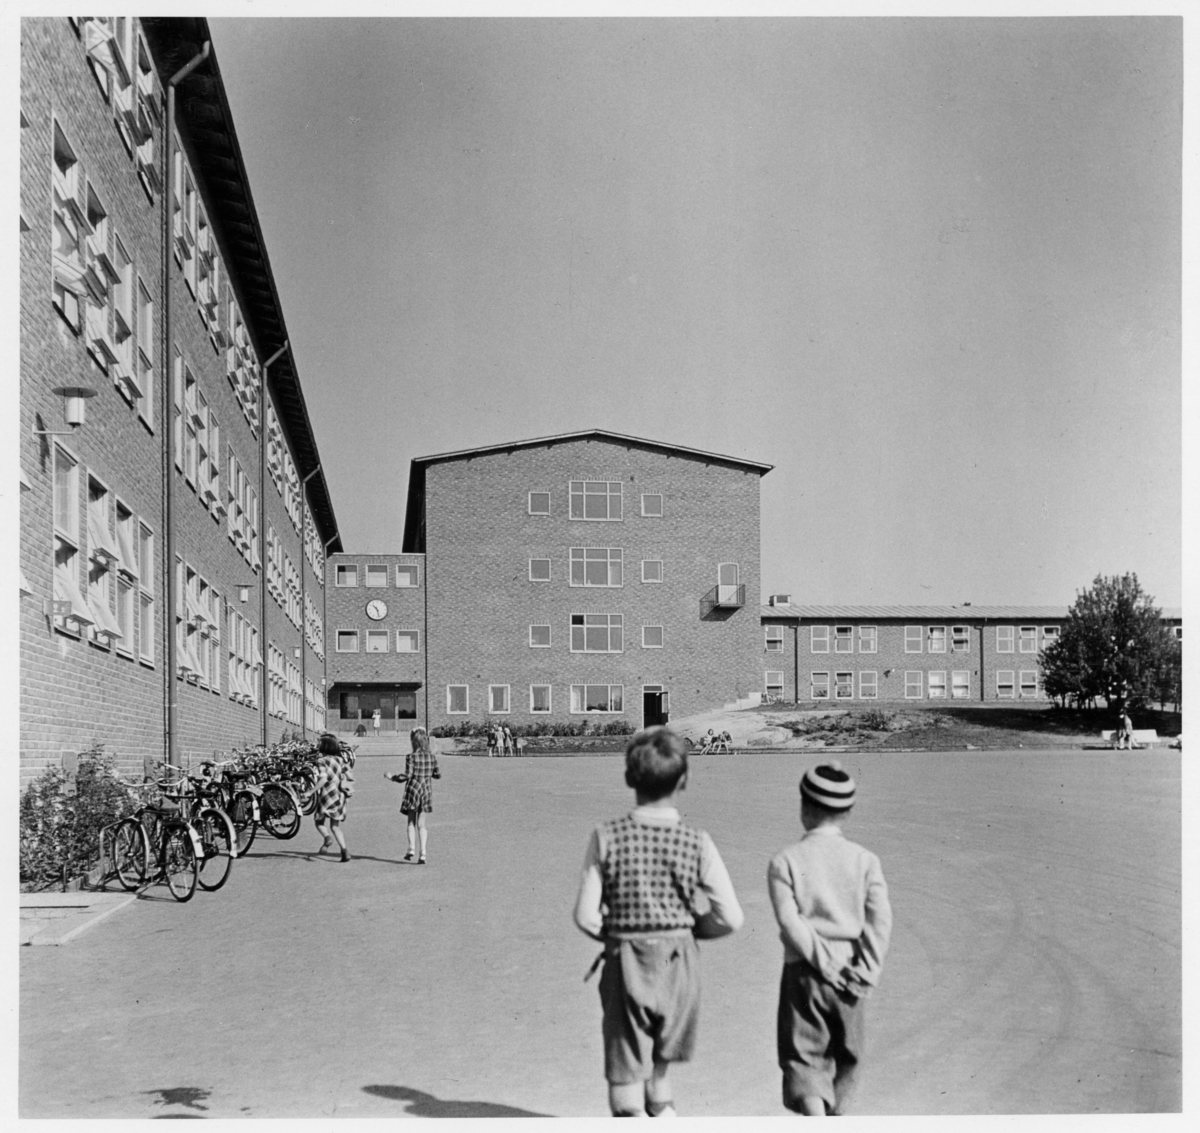 Riksby folkskola (Musikskolan, Västerortsdistr.)
Exteriör, barn i förgrunden